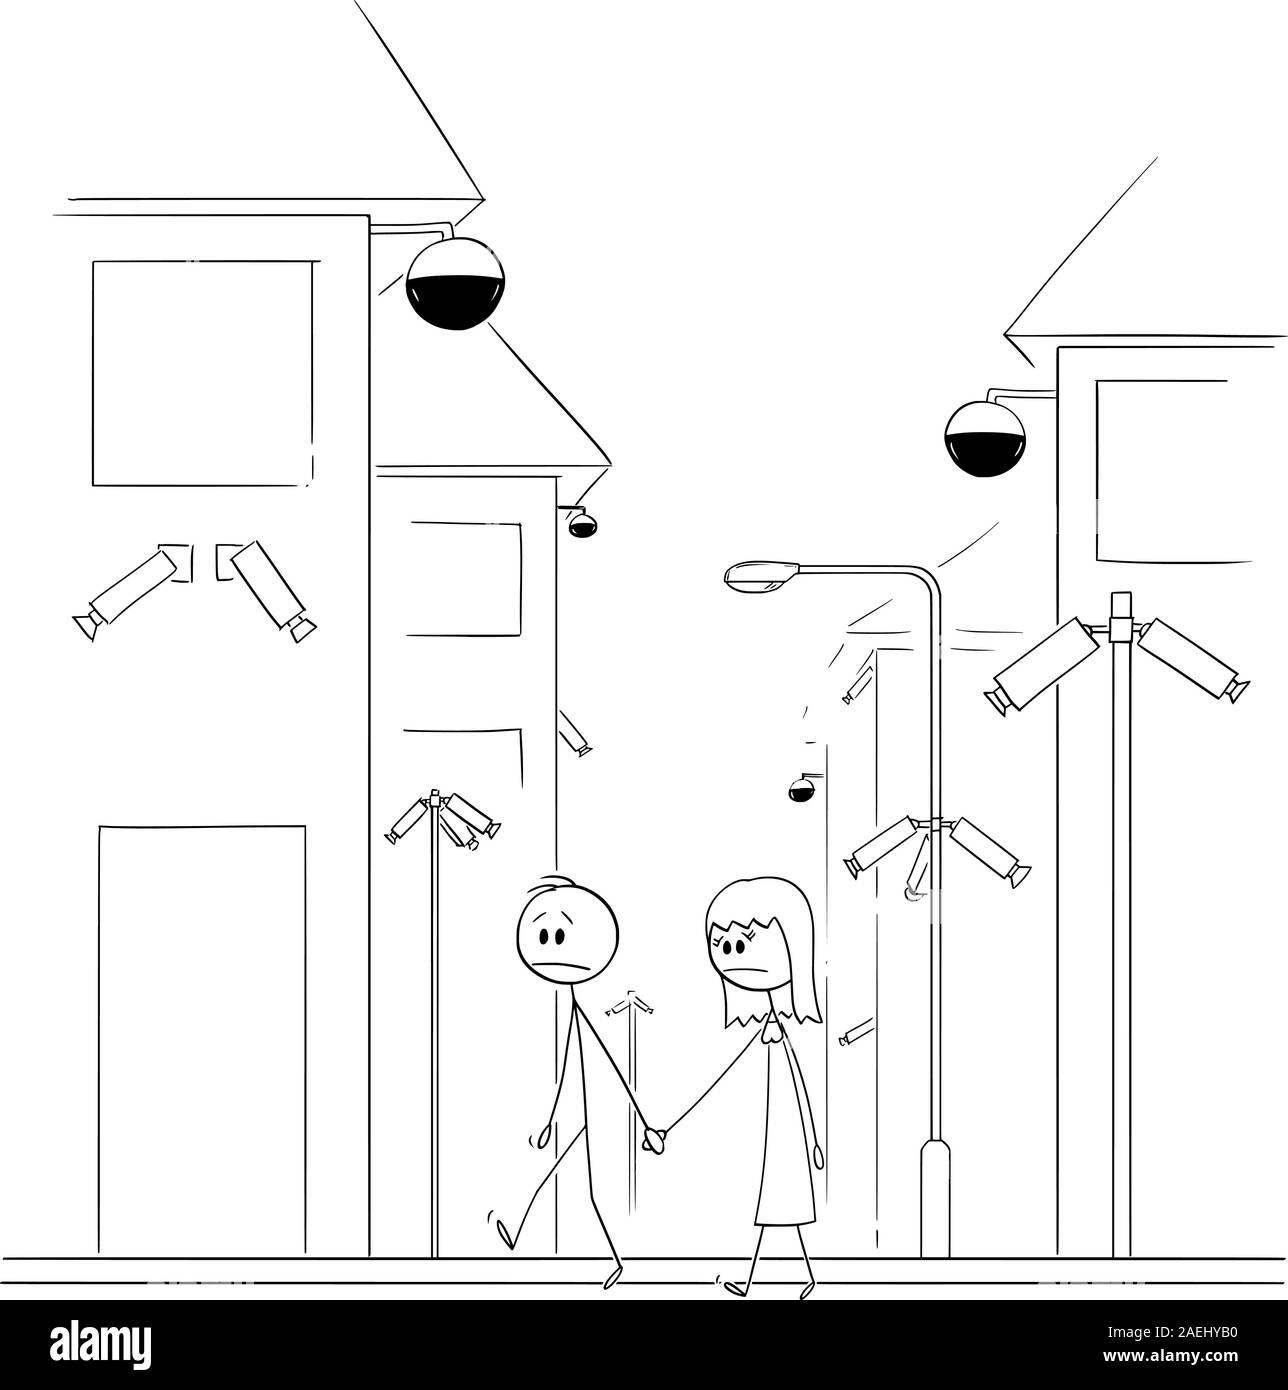 Vector cartoon stick figure dessin illustration conceptuelle de l'homme et de la femme marchant dans la rue avec surveillance des caméras de sécurité partout. Concept de vie dans la société non-liberté ou d'une dictature. Illustration de Vecteur